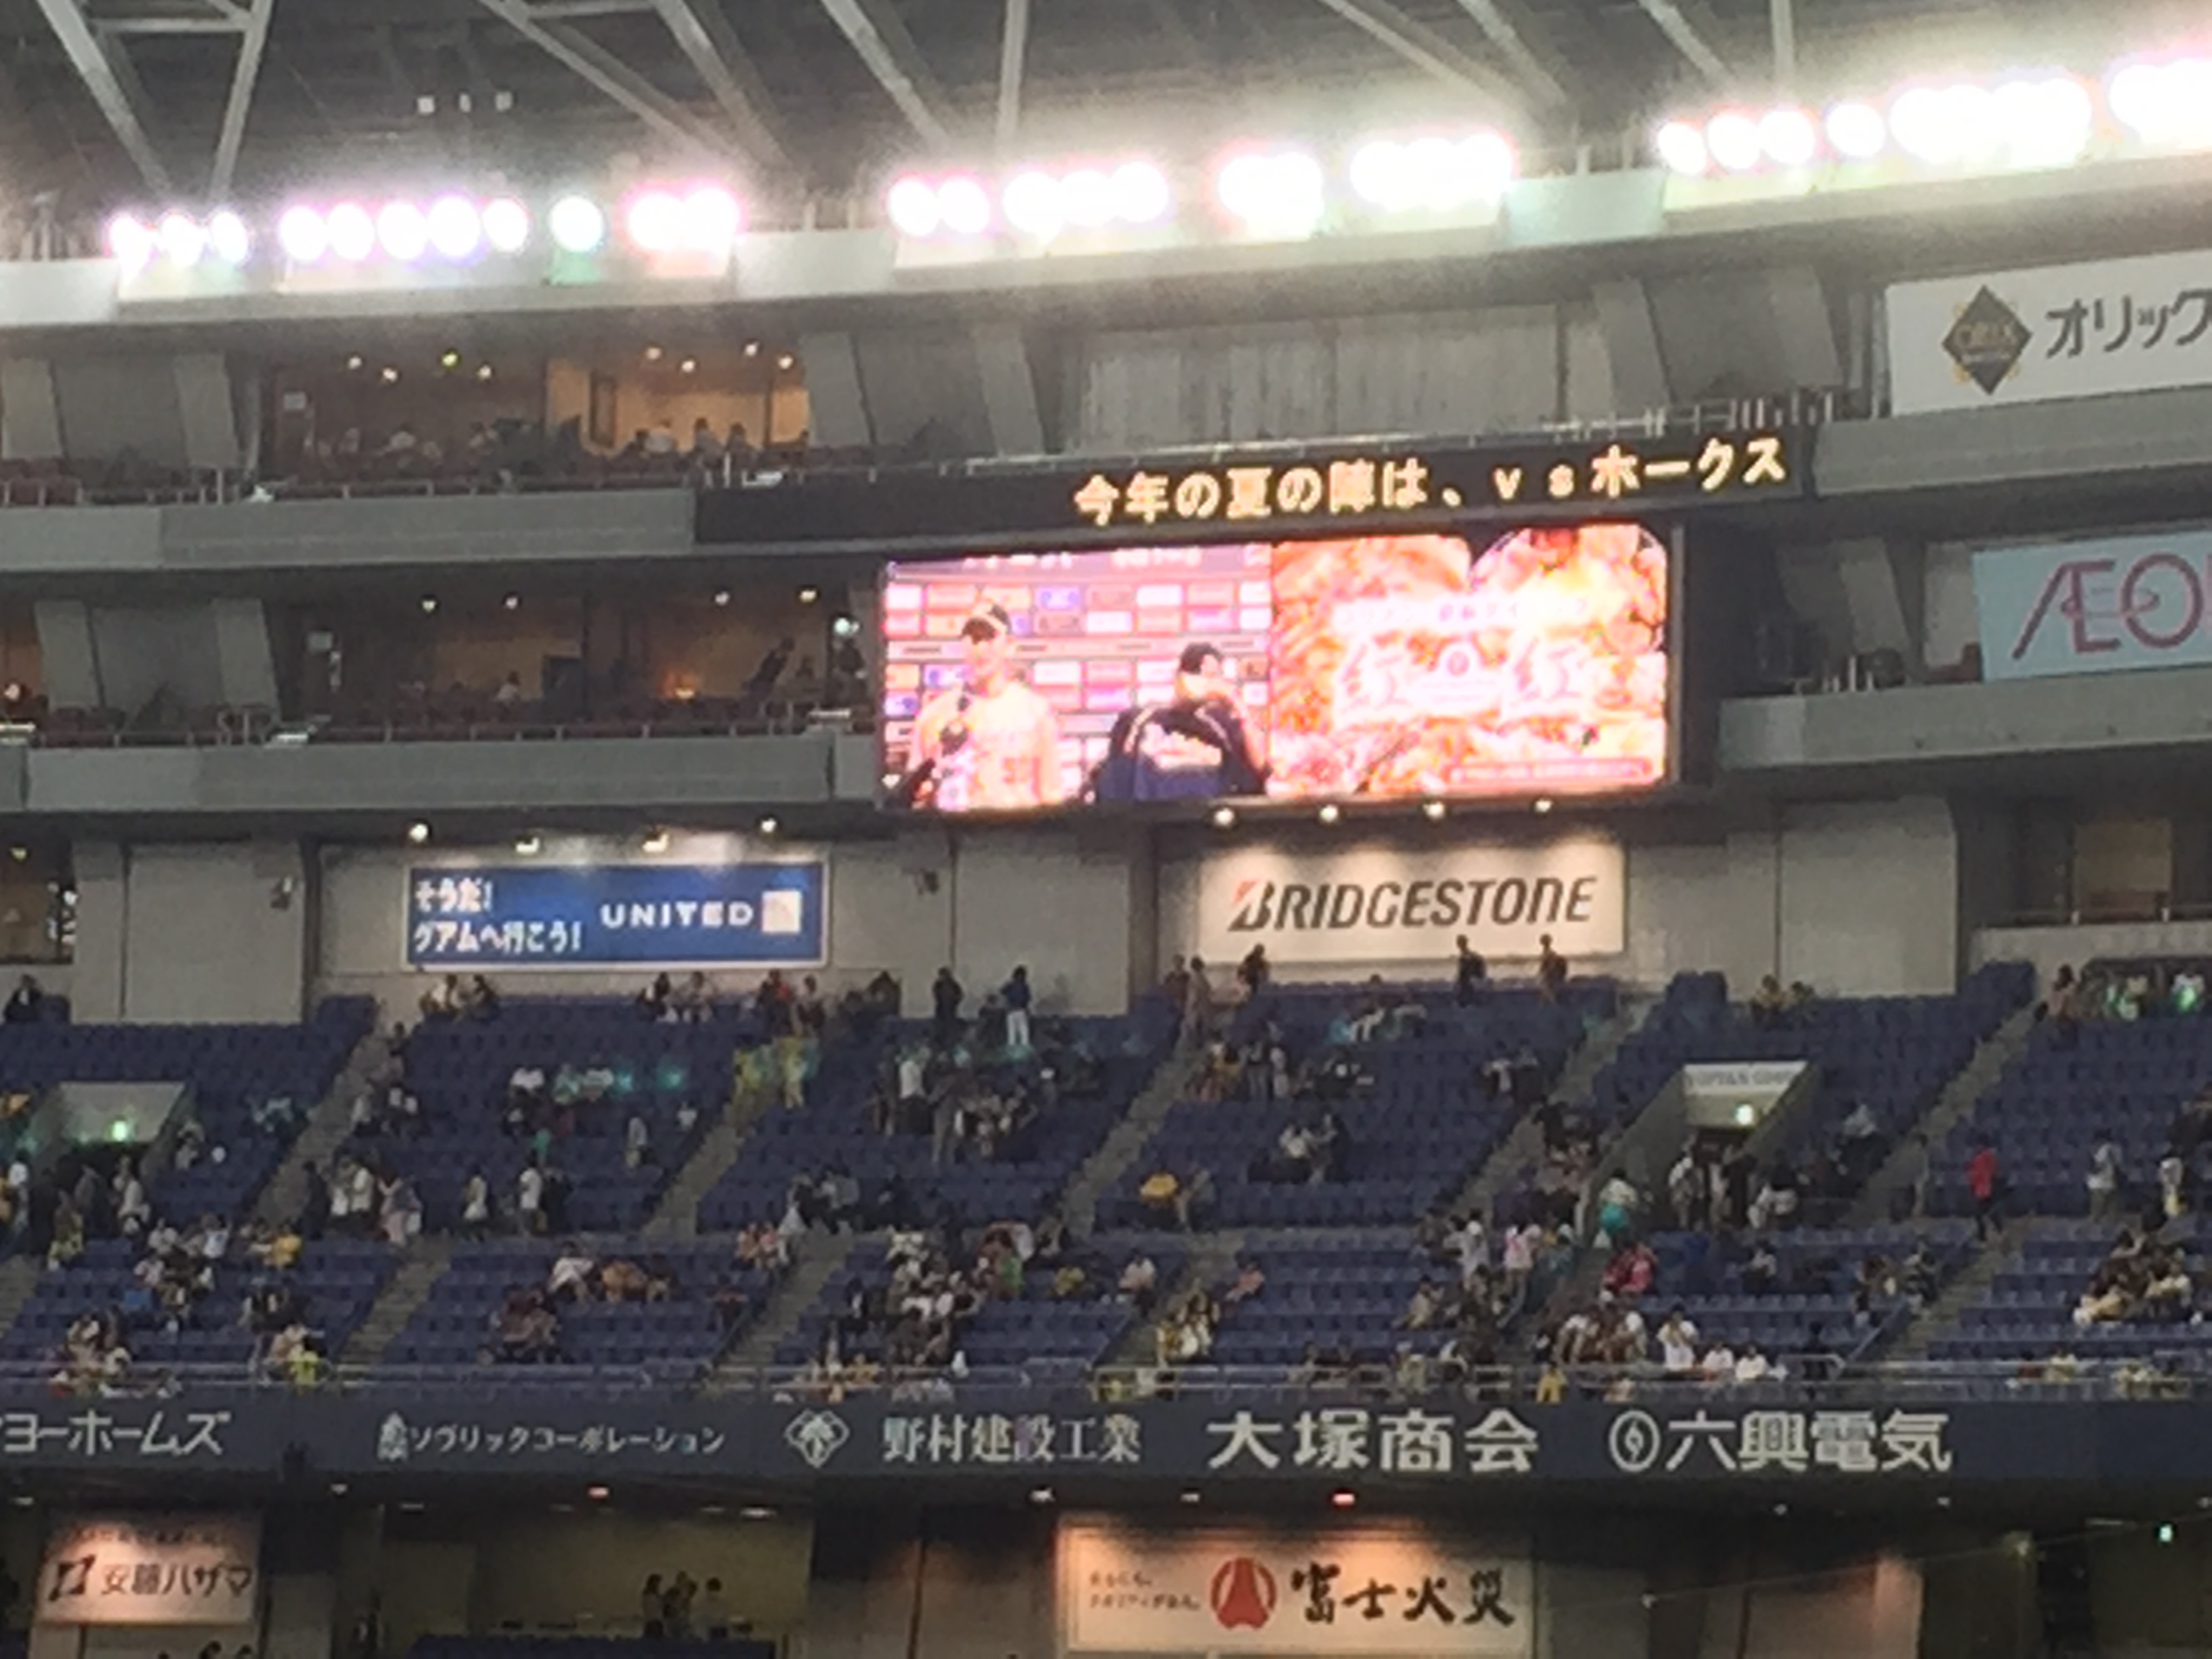 2015年6月14日 オリックス 対 阪神 関西対決2015 絶対に負けられへん。